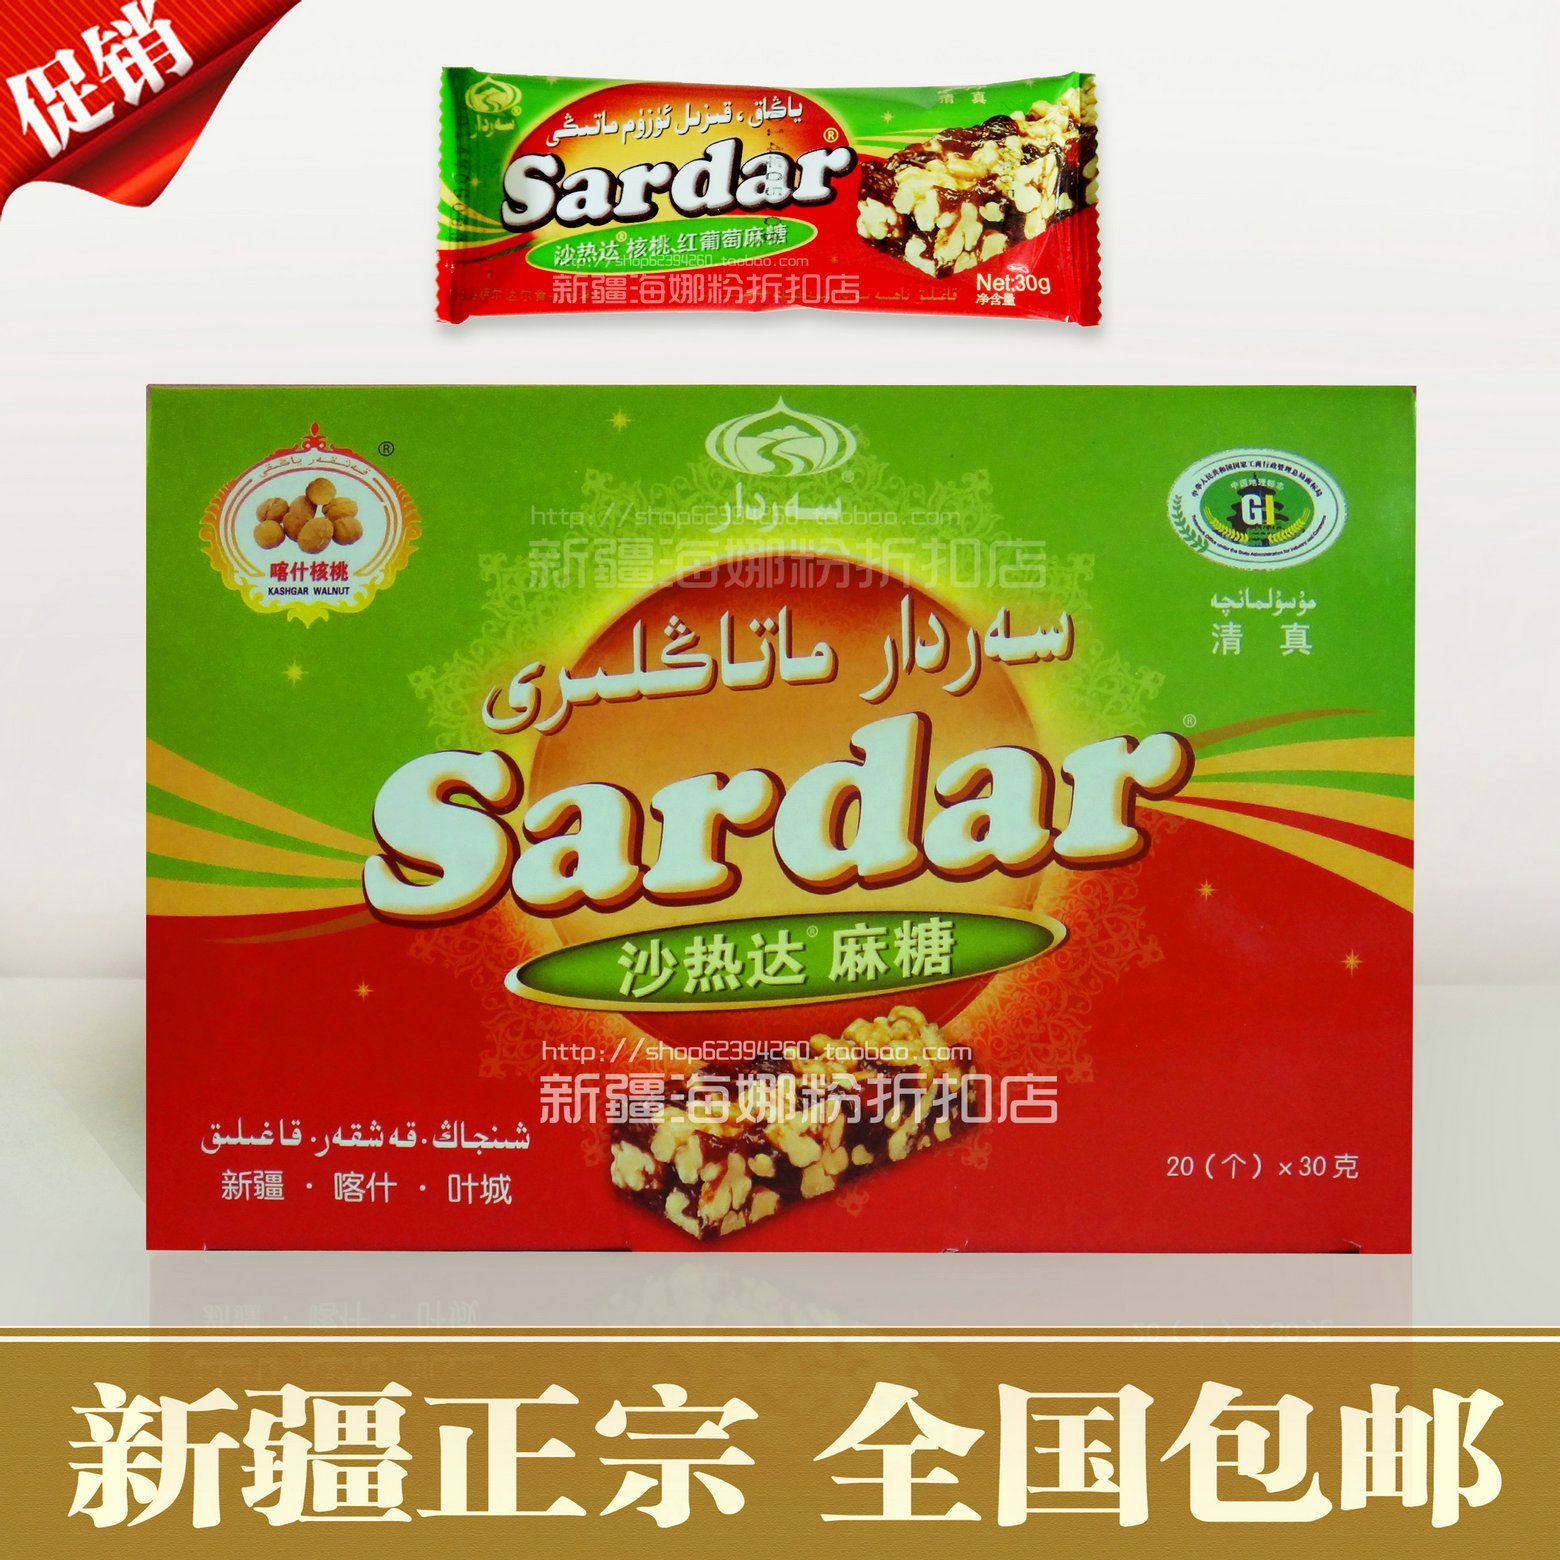 新疆叶城特产Sardar沙热达切糕麻糖玛仁糖 600克 核桃+葡萄 包邮